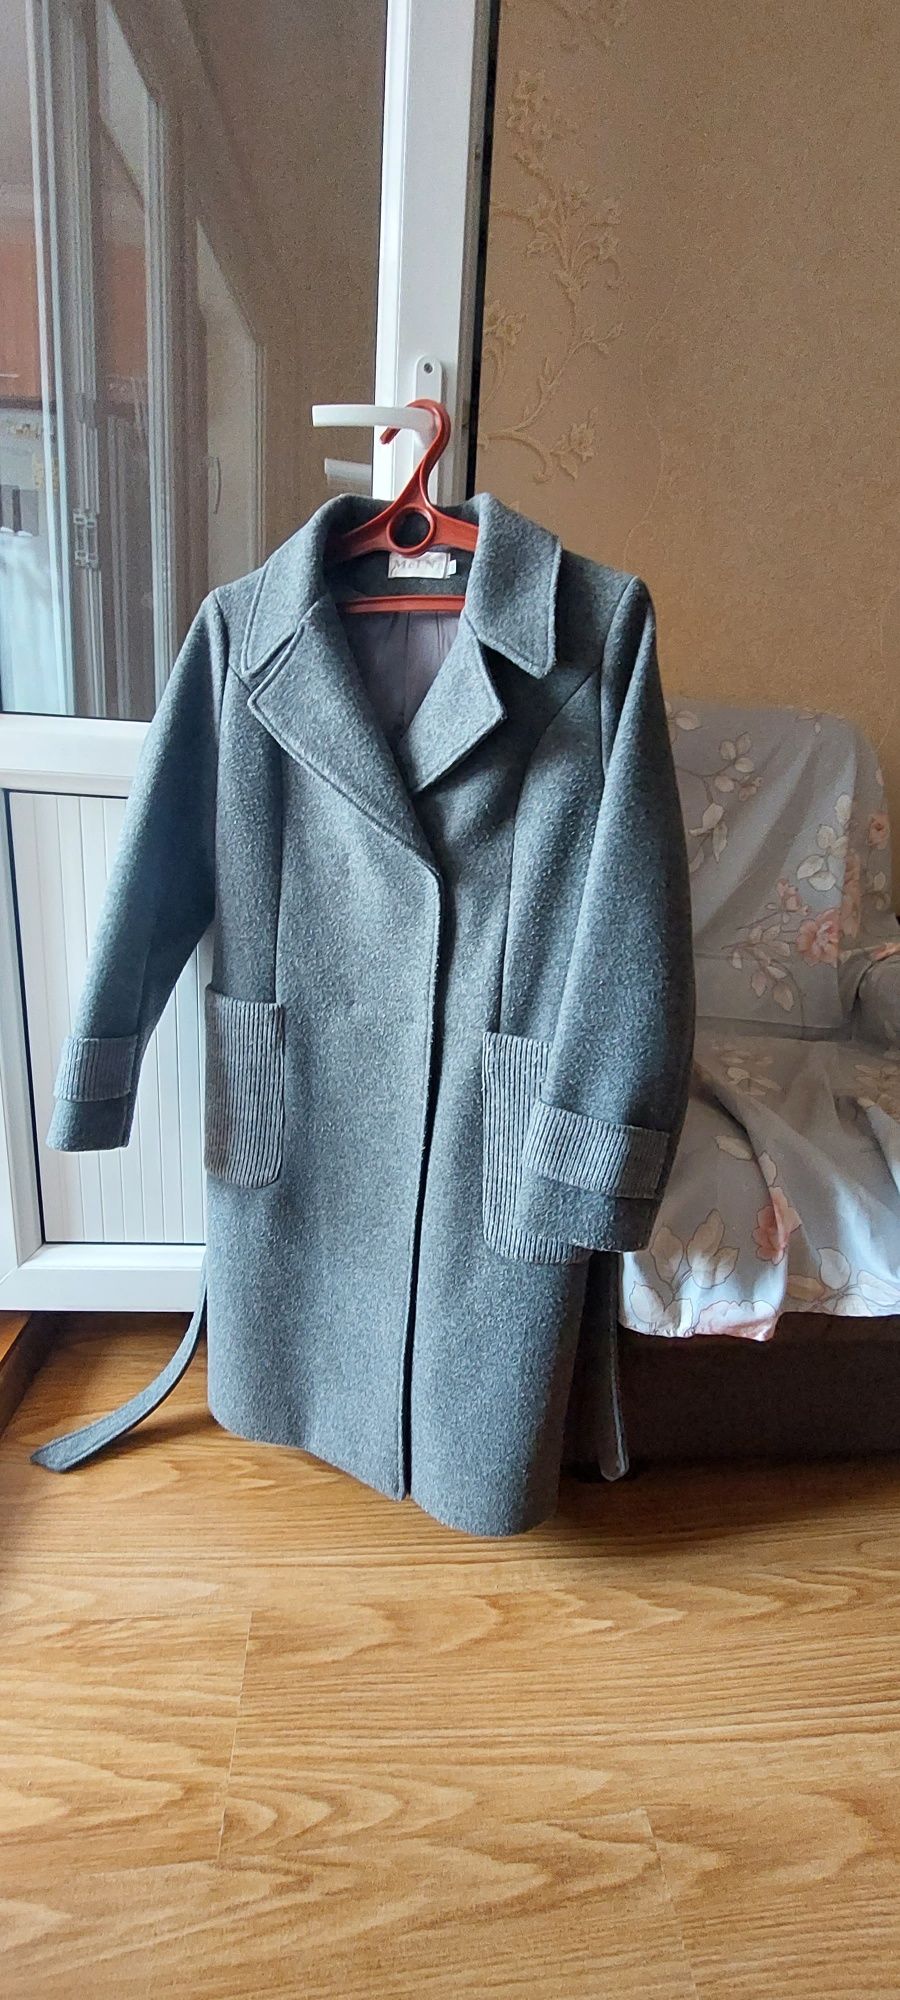 Зимние пальто и куртки б/у после химчистки в хорошем состоянии